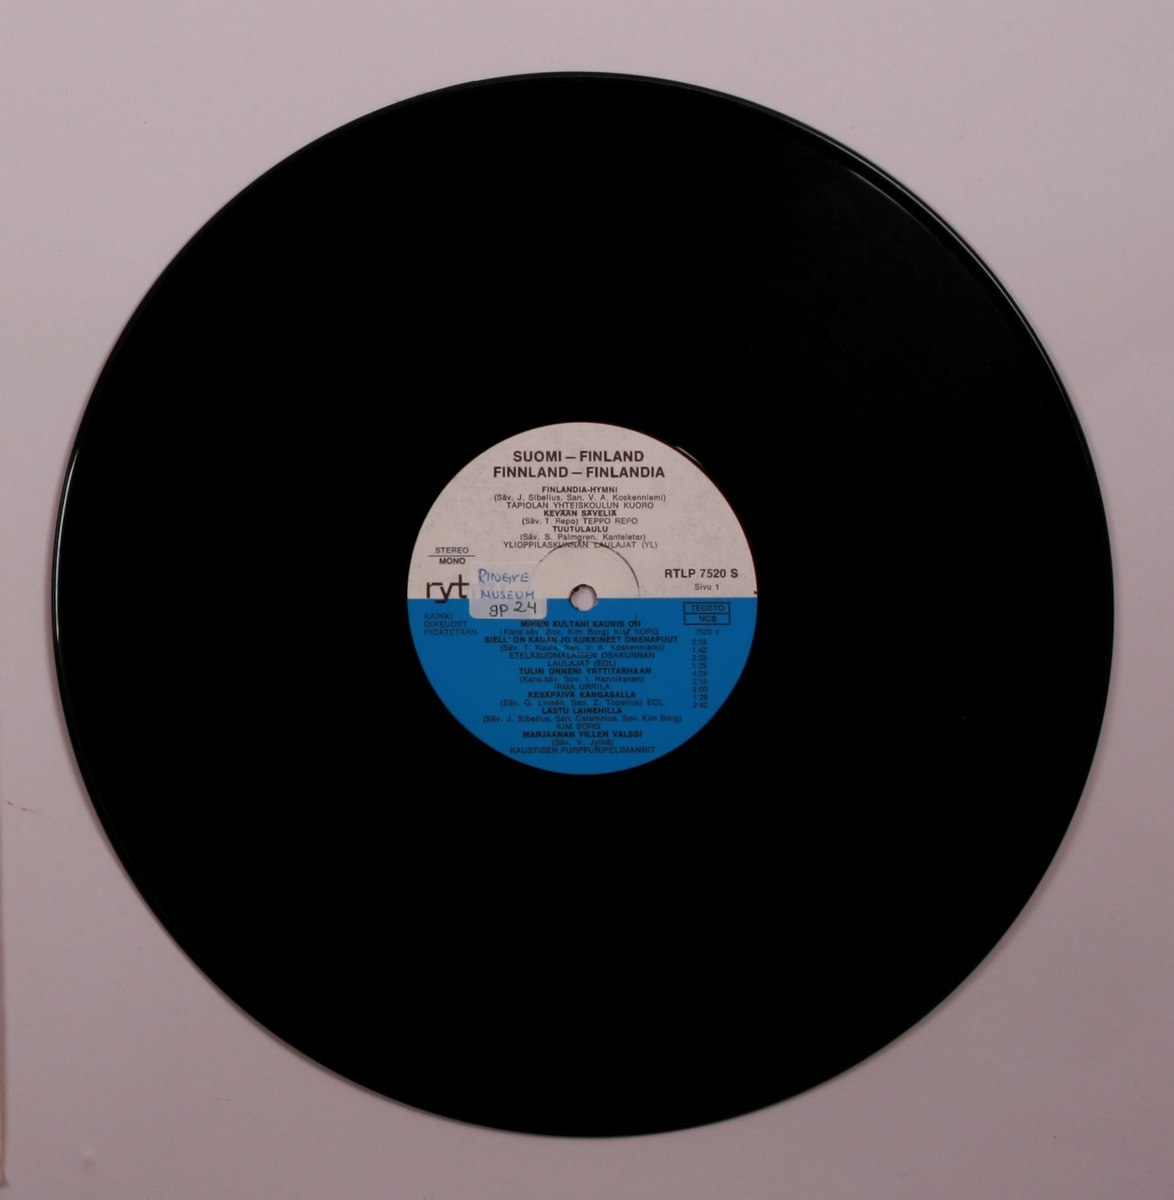 Grammofonplate i svart vinyl og plateomslag i papp. Plata ligger i en plastlomme.